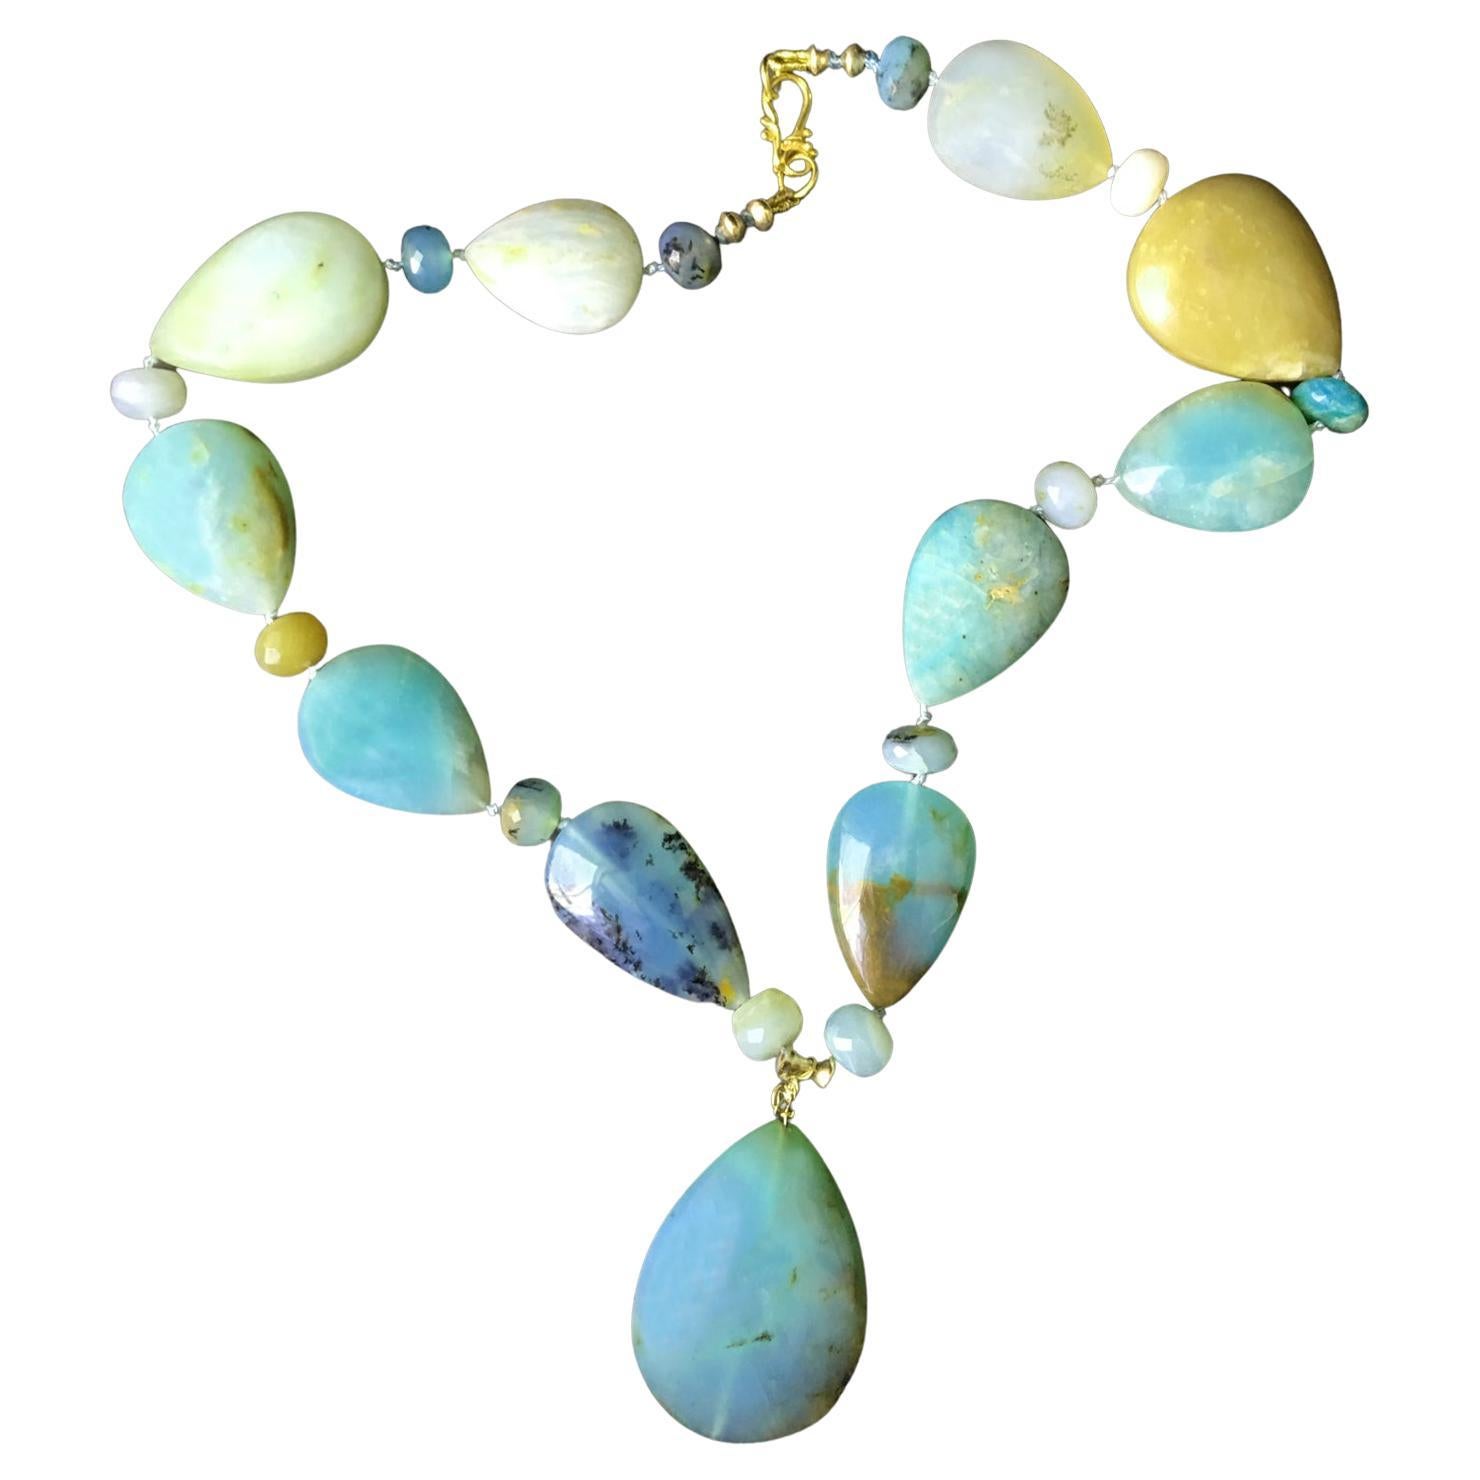 Mixed Cut Rare Blue Green Peruvian Opals Teardrop Collar Necklace 18KT, 14KT Gold  For Sale